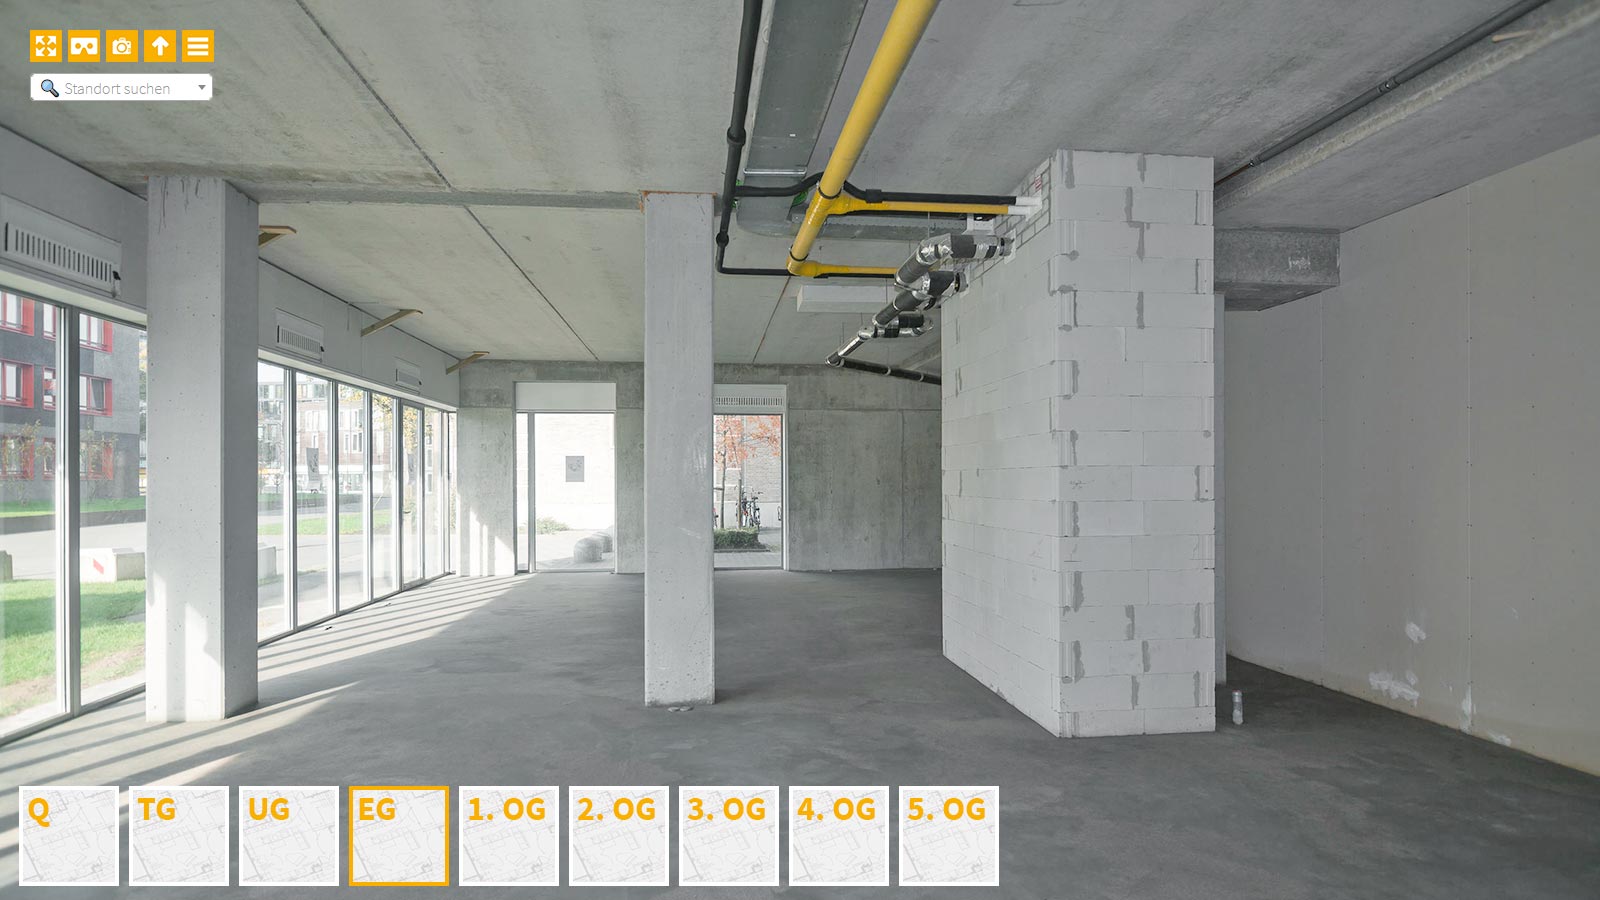 Baudokumentation 360 Grad bei gestörten Projekten in 


	


	


	


	


	


	


	


	


	


	Darmstadt









, Bilddokumentation als virtueller Rundgang